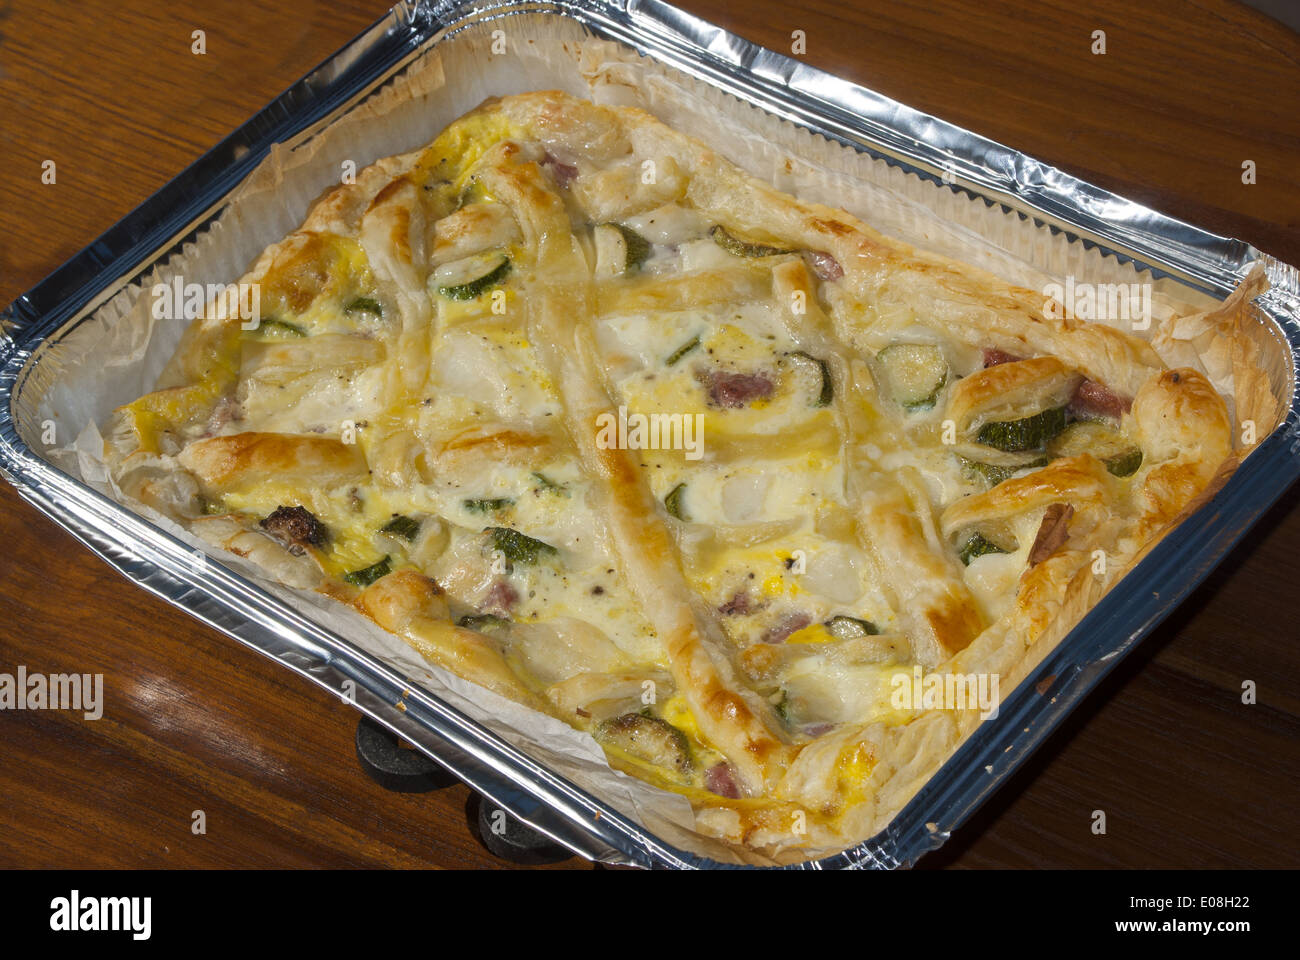 Recette traditionnelle sicilienne : tarte salée farcie Banque D'Images